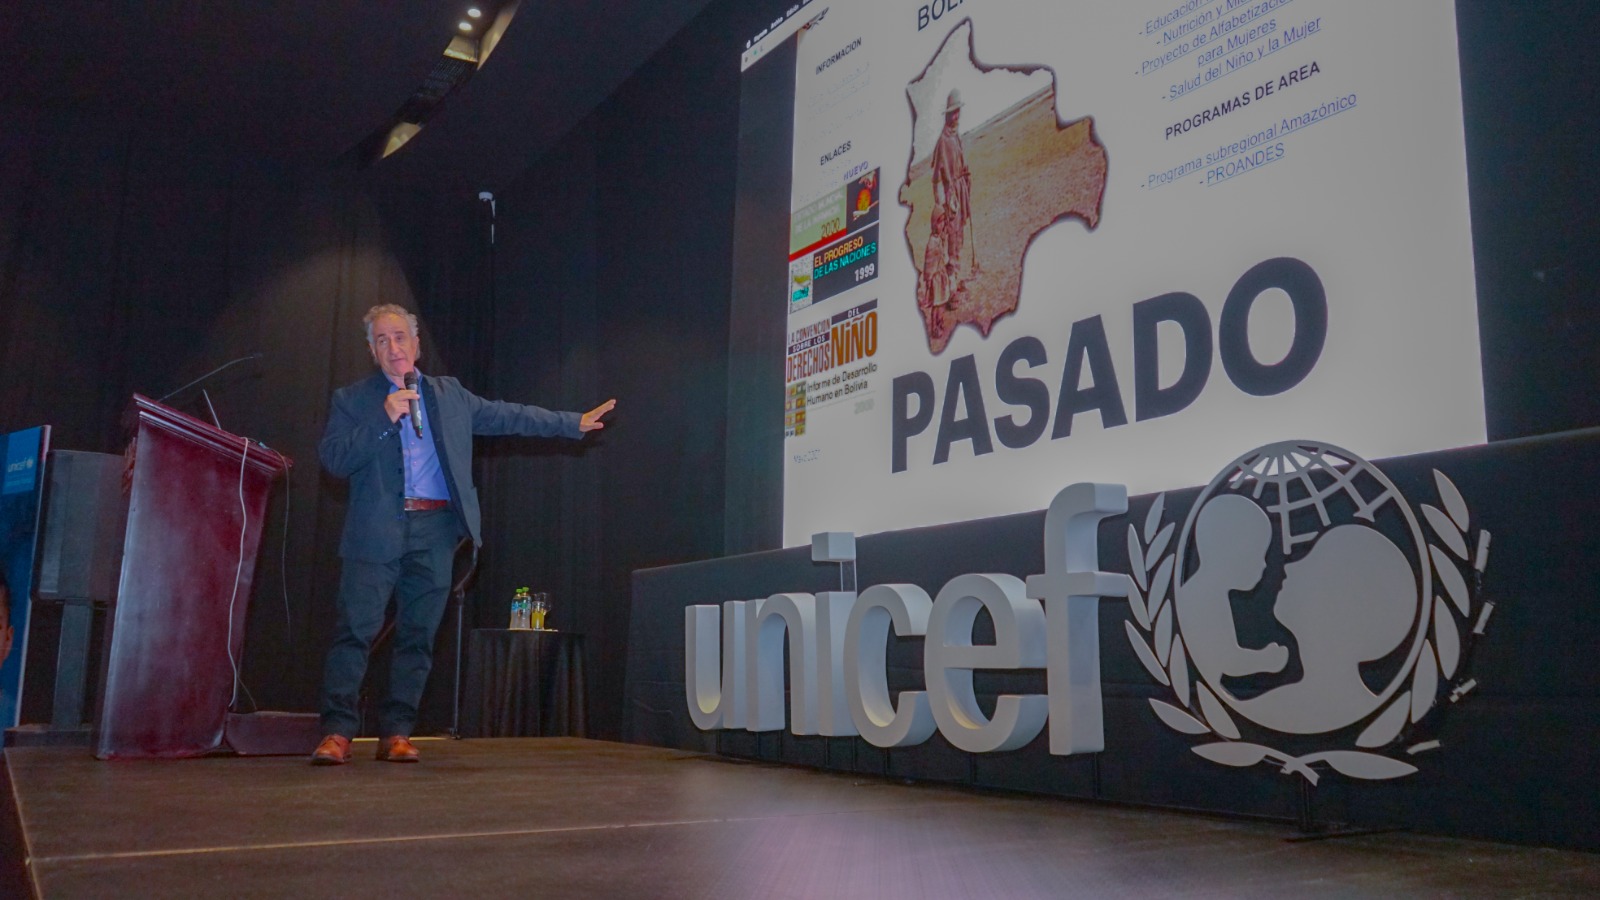 UNICEF impulsa a las empresas a conectarse  con propósitos sociales a través de la innovación   